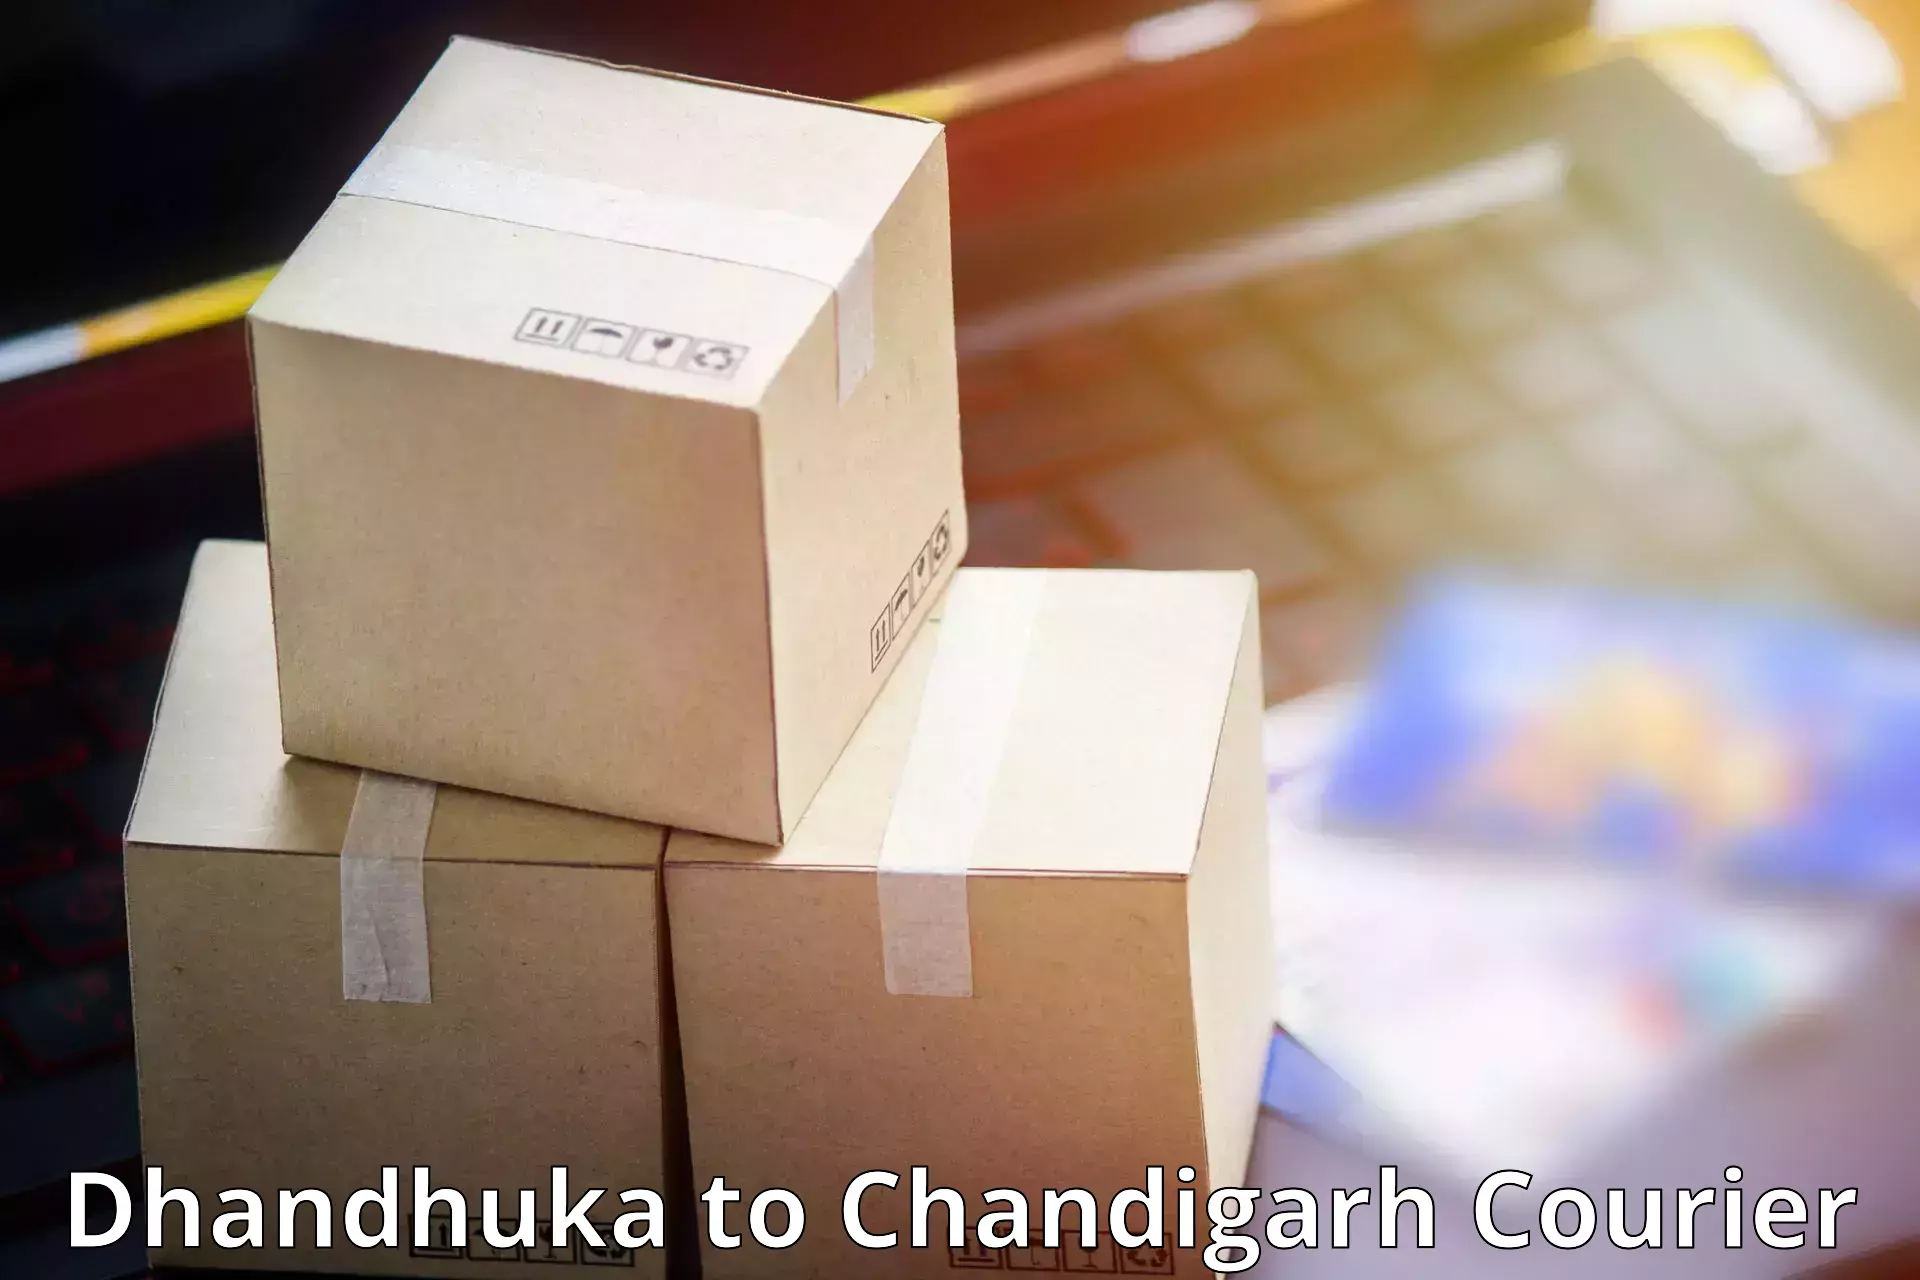 Efficient parcel service Dhandhuka to Chandigarh